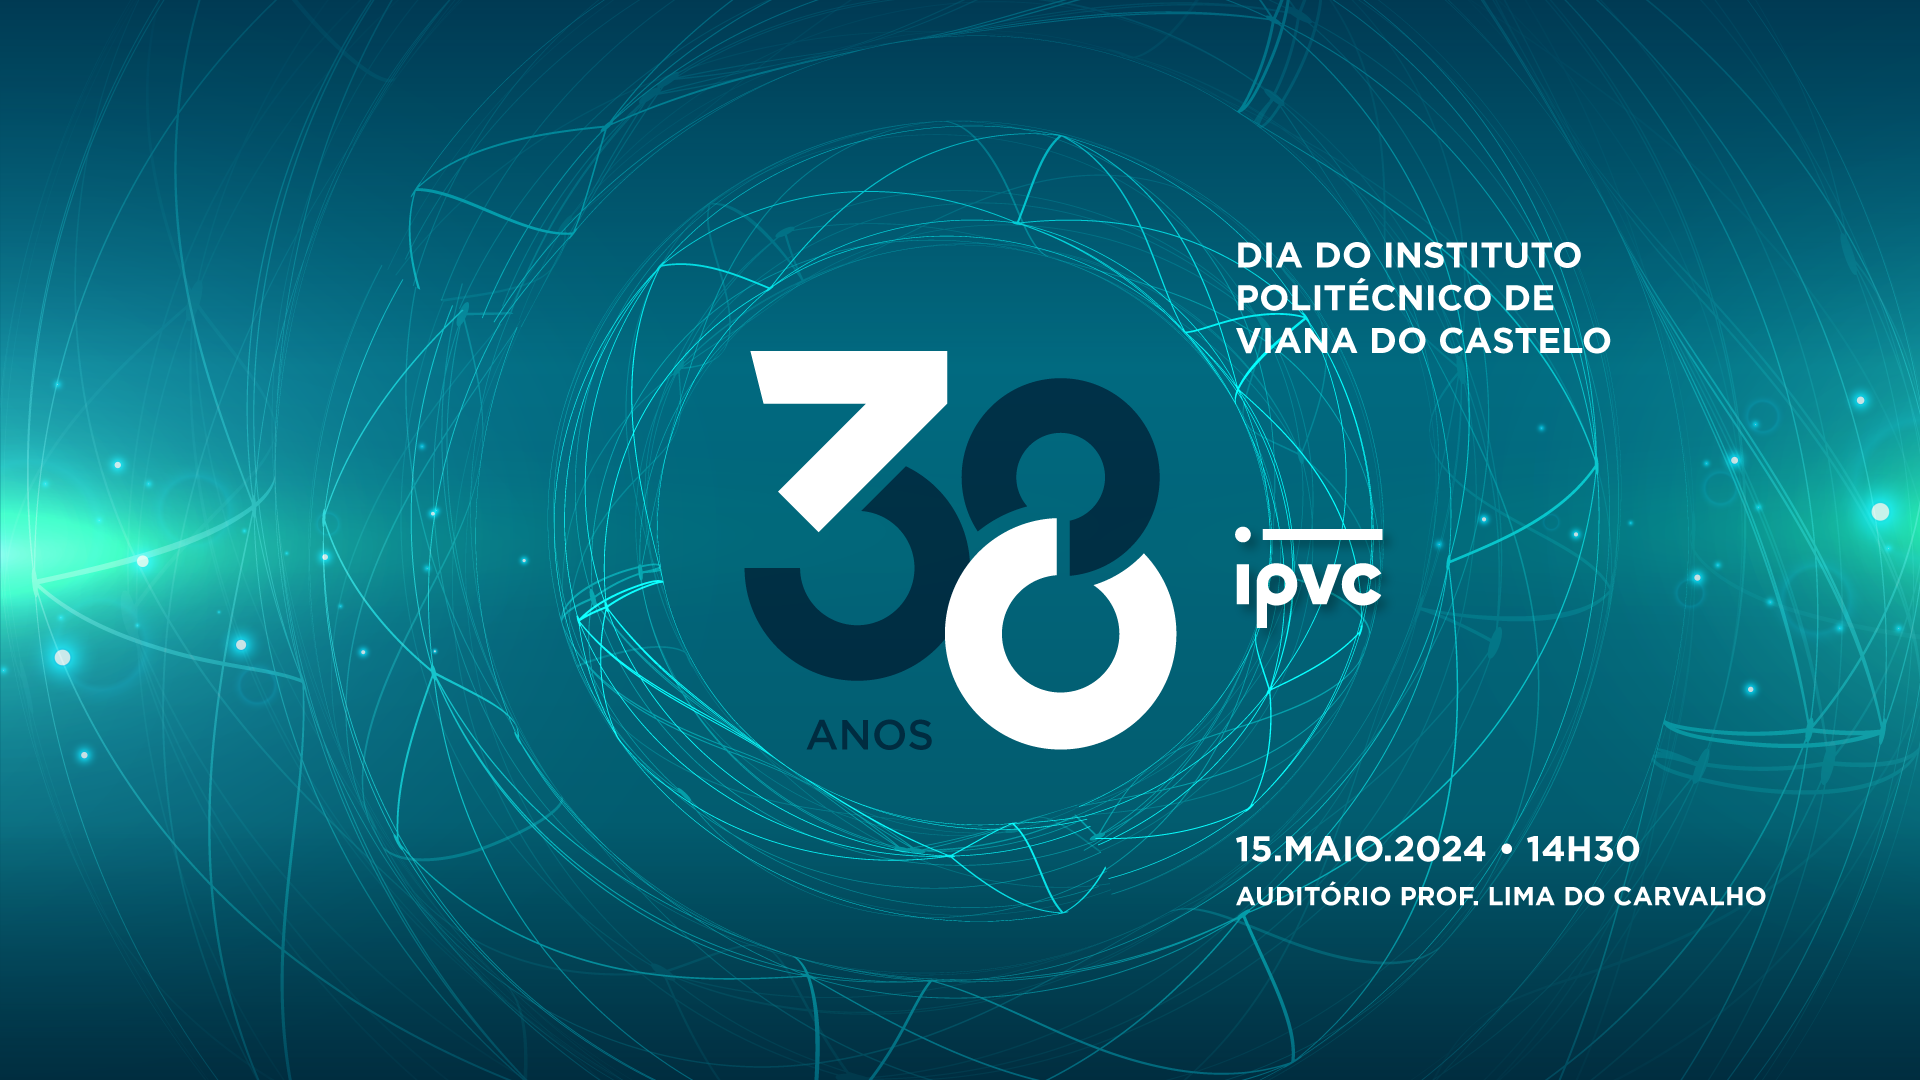 (Português) 38 anos de excelência académica e compromisso com a inovação